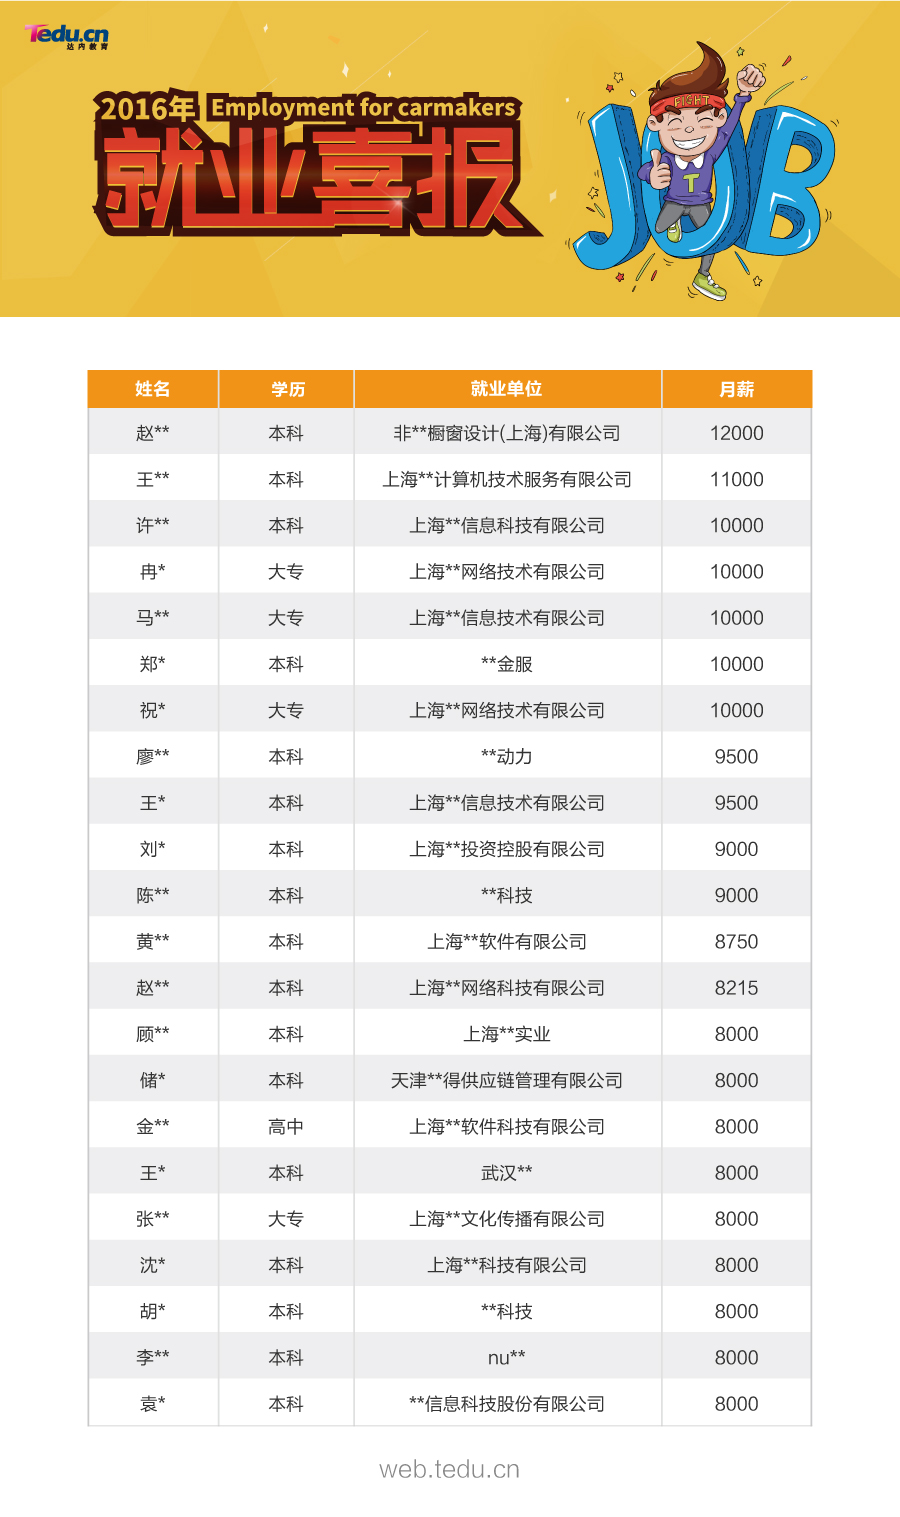 达内上海web前端毕业班传捷报最高月薪1200